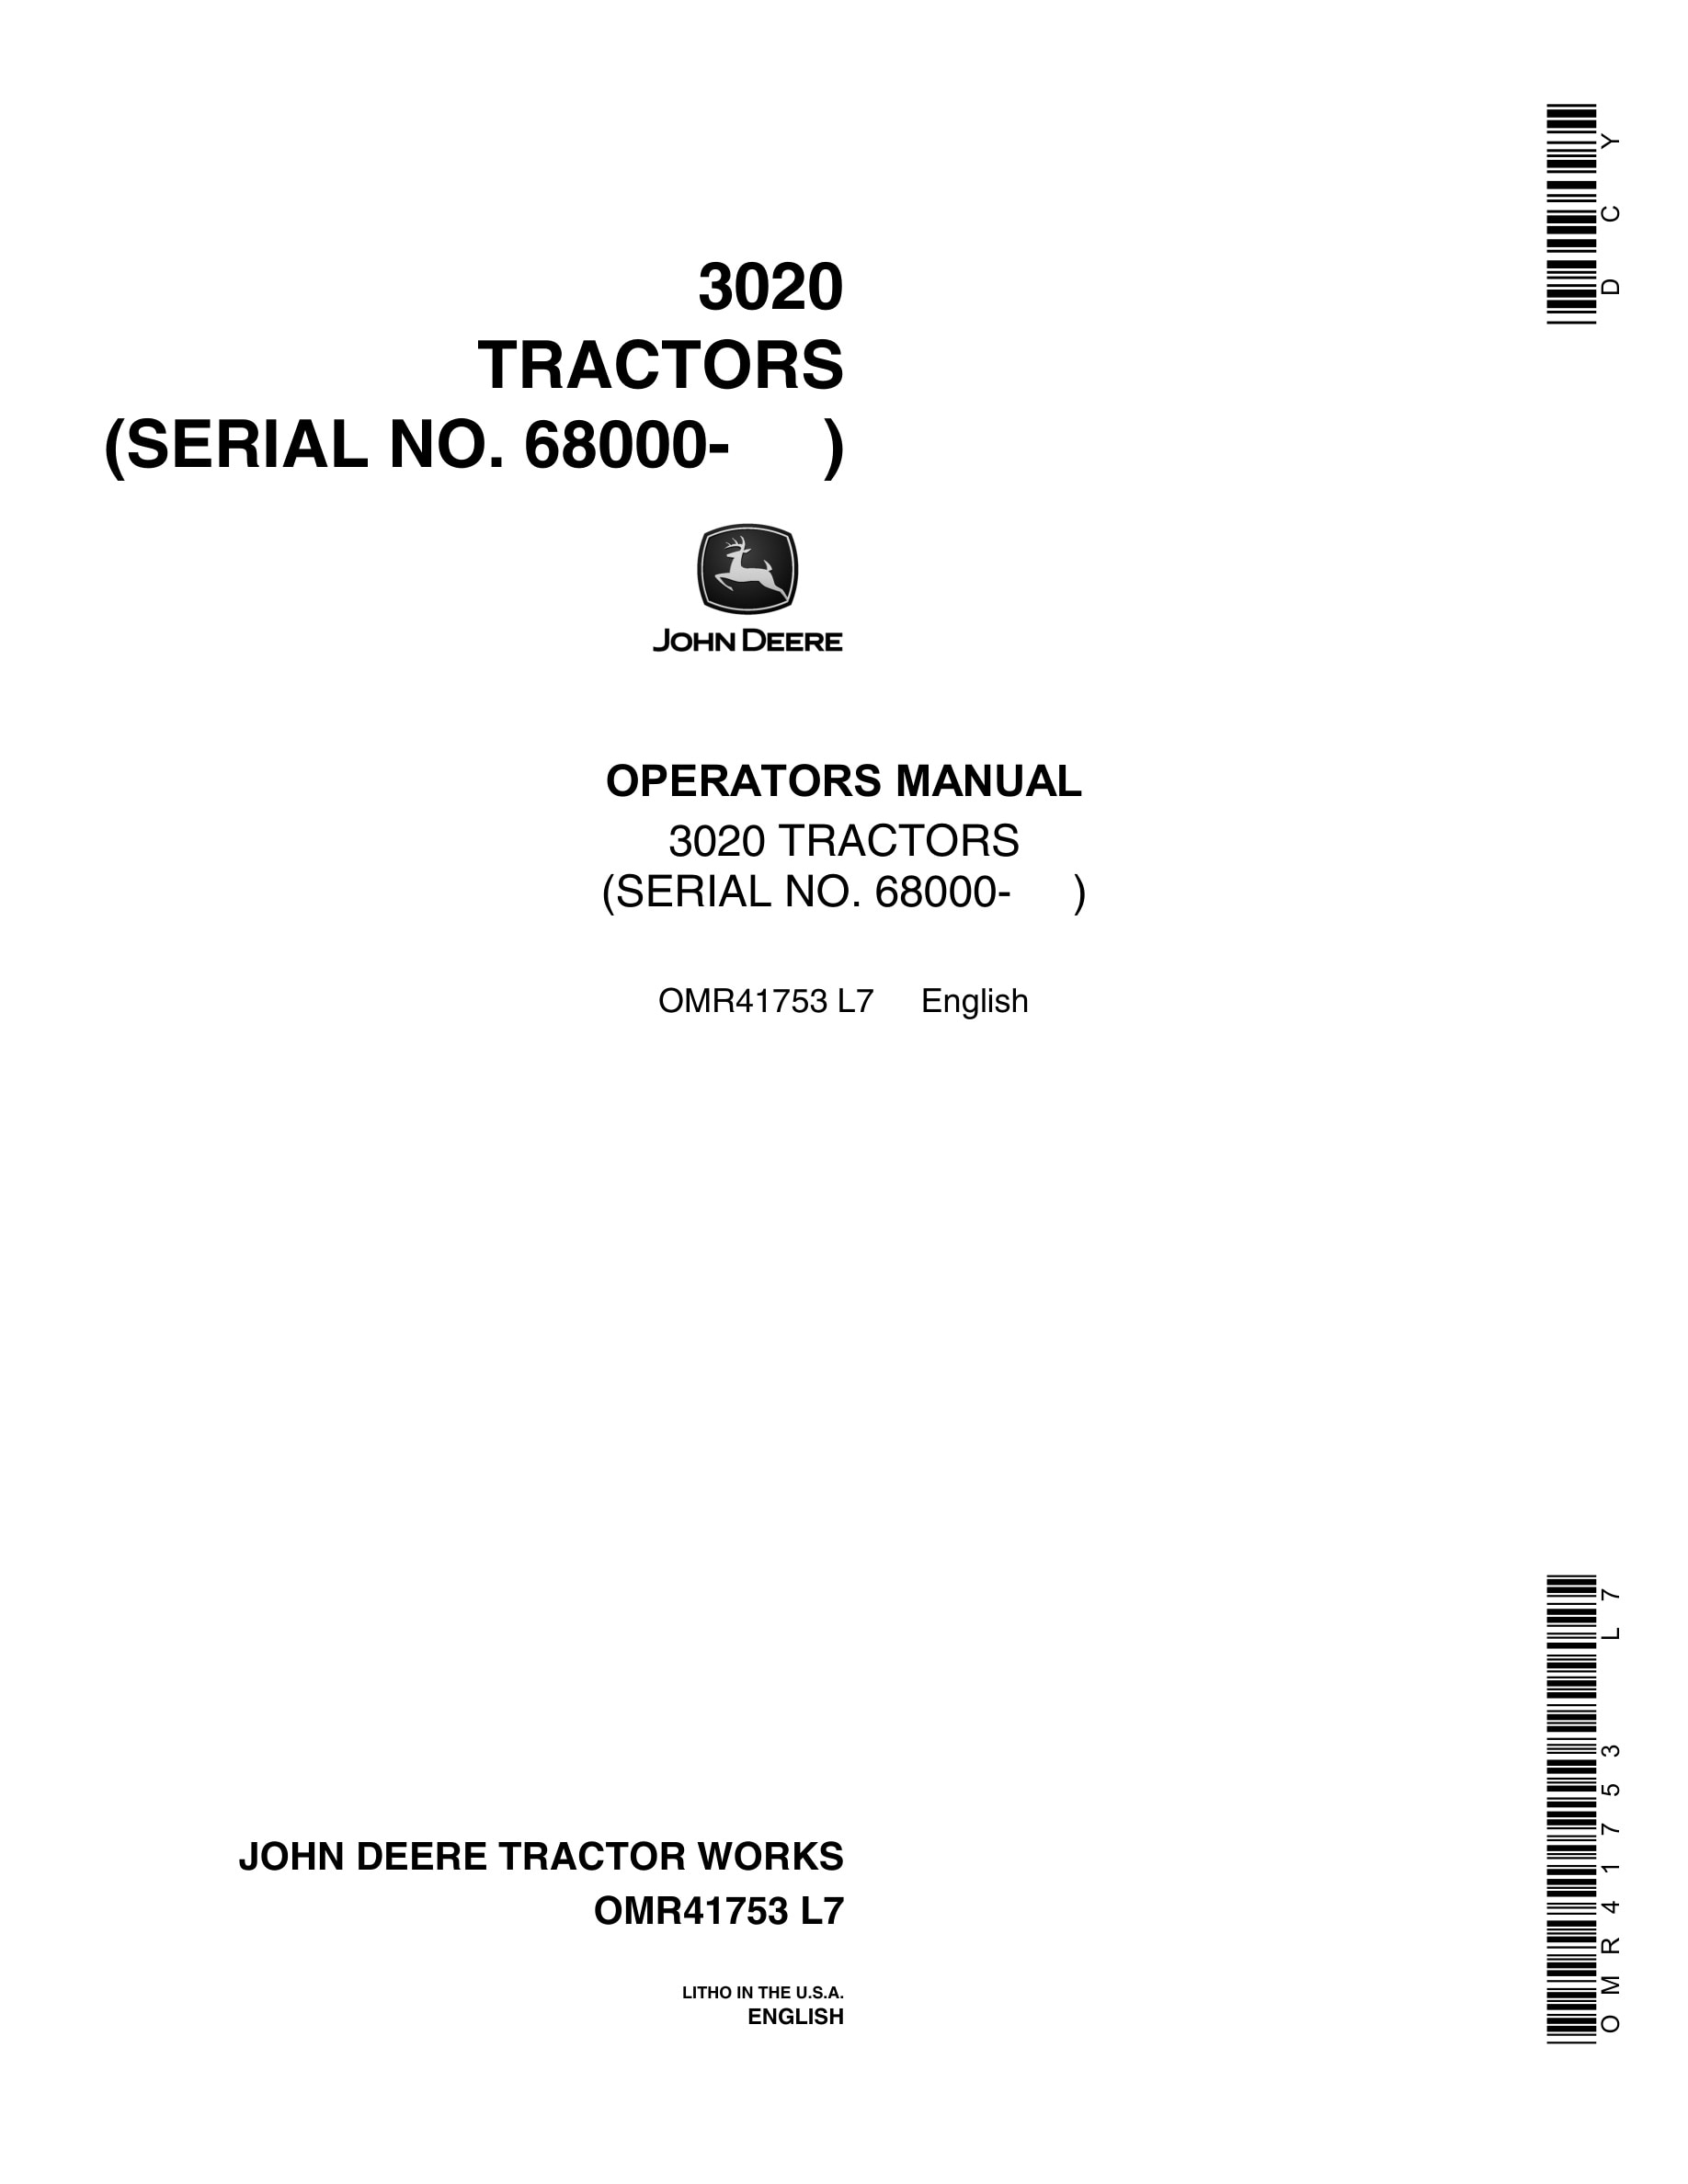 John Deere 3020 Tractor Operator Manual OMR41753-1